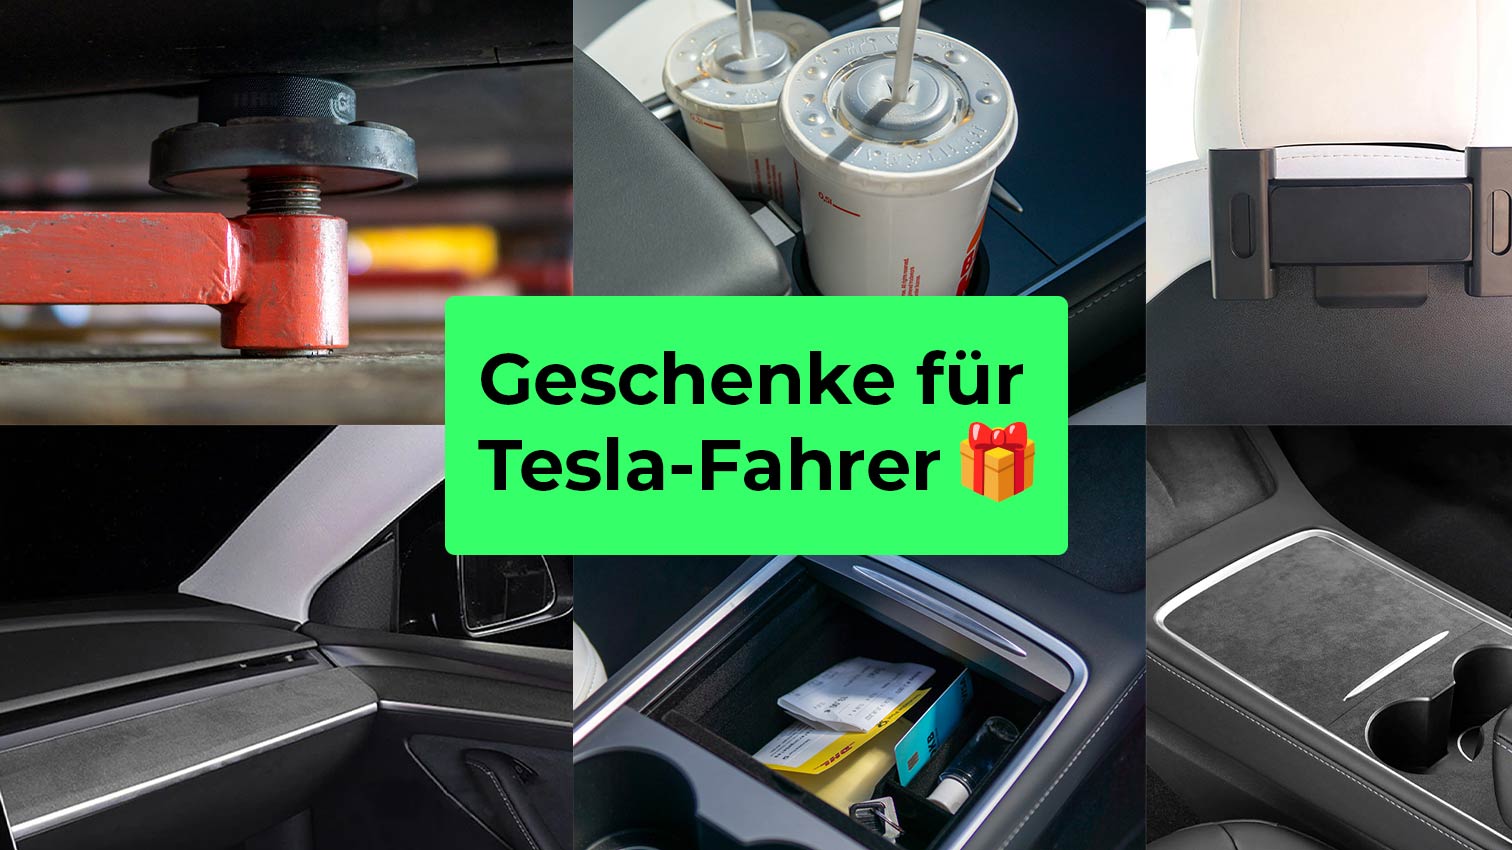 Geschenke für Tesla-Fahrer: 10 tolle Ideen für Weihnachten und Geburts